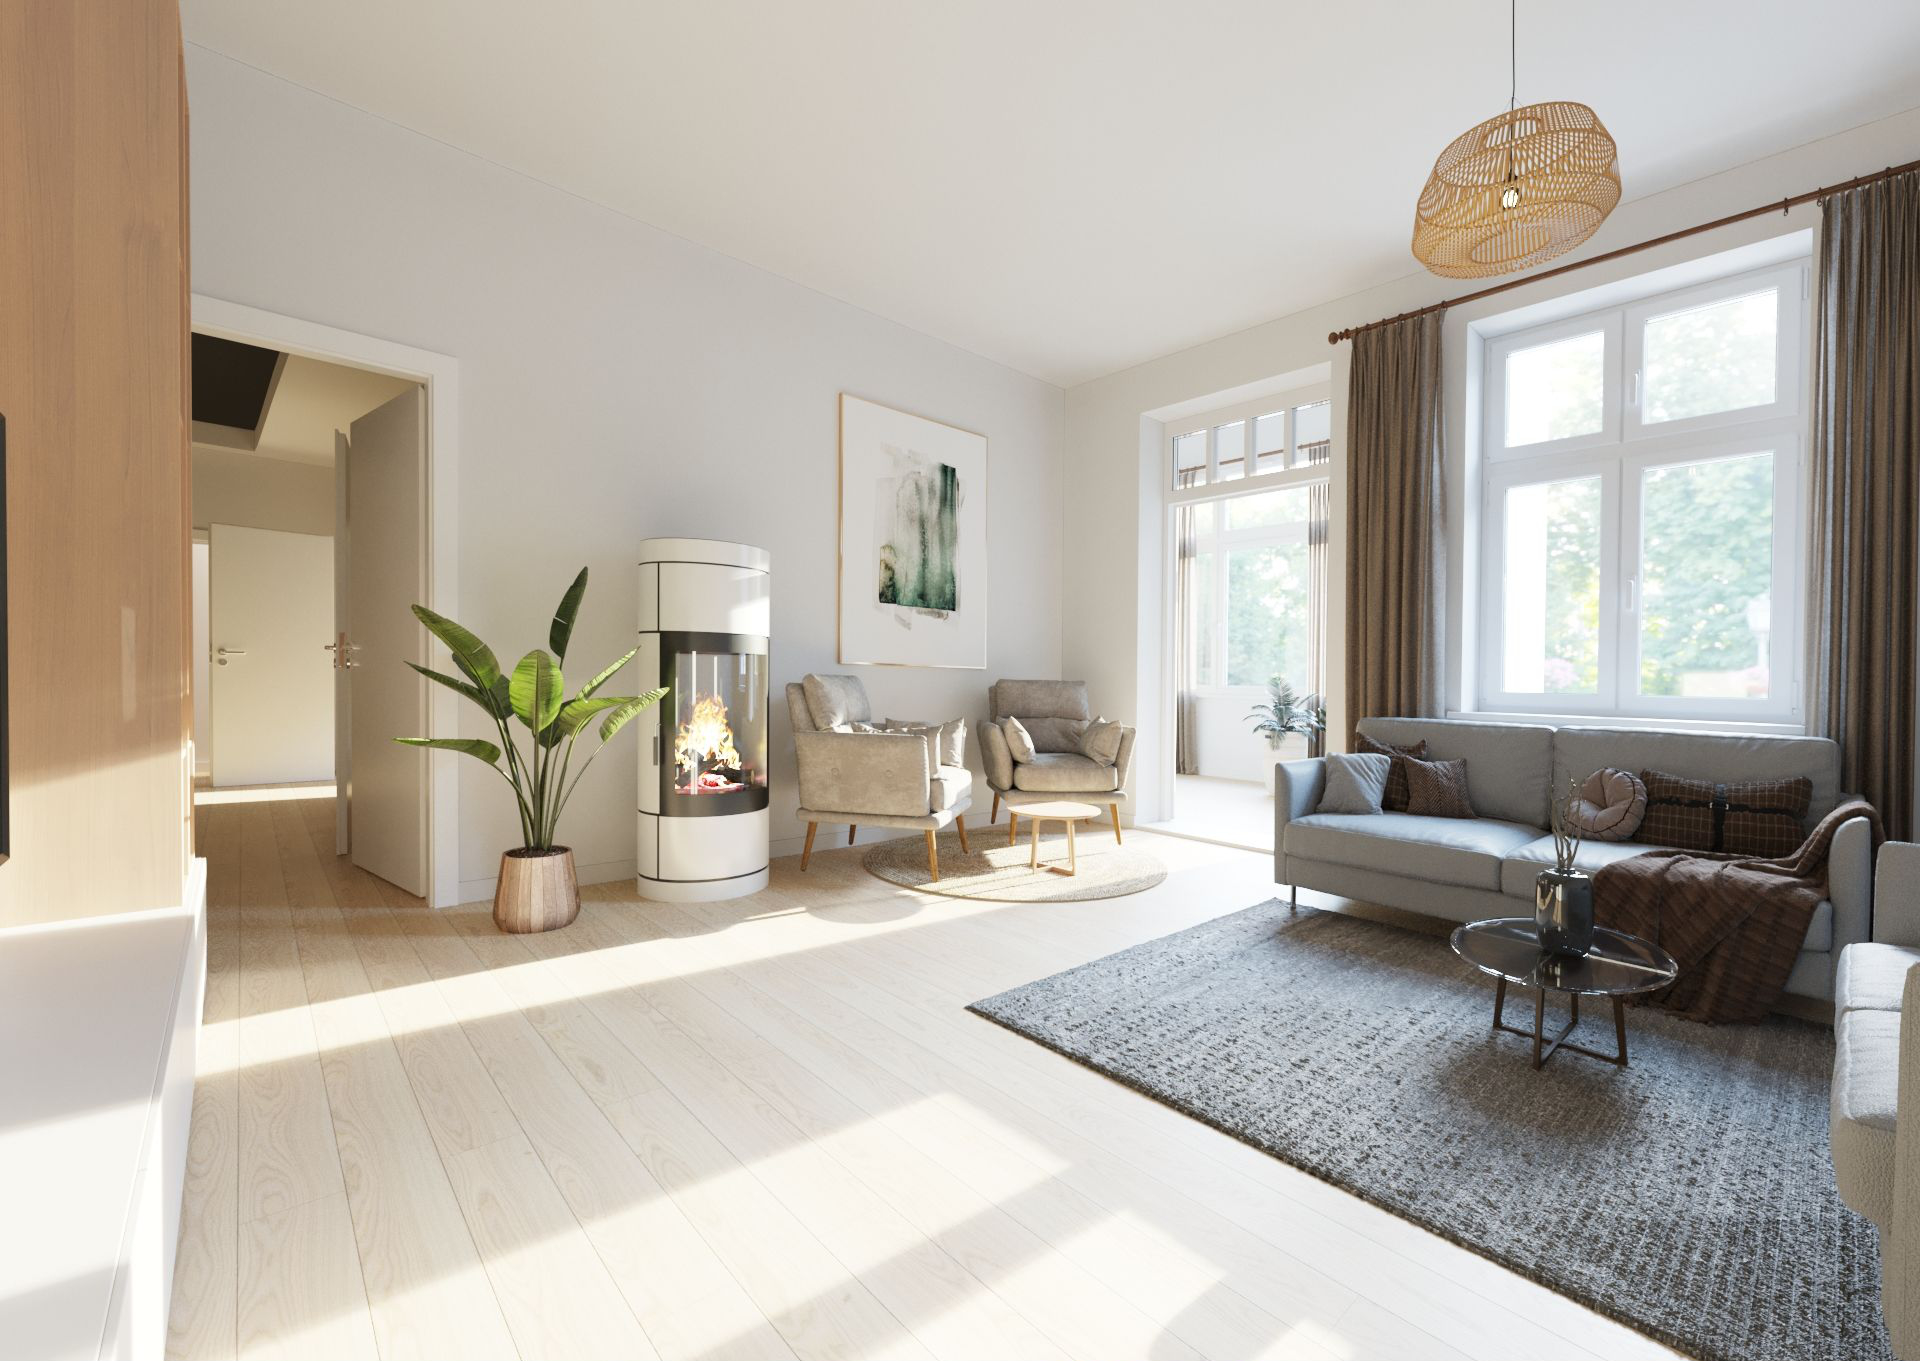 Das Wohnzimmer einer Eigentumswohnung wurde mit Homestaging virtuell neu eingerichtet.